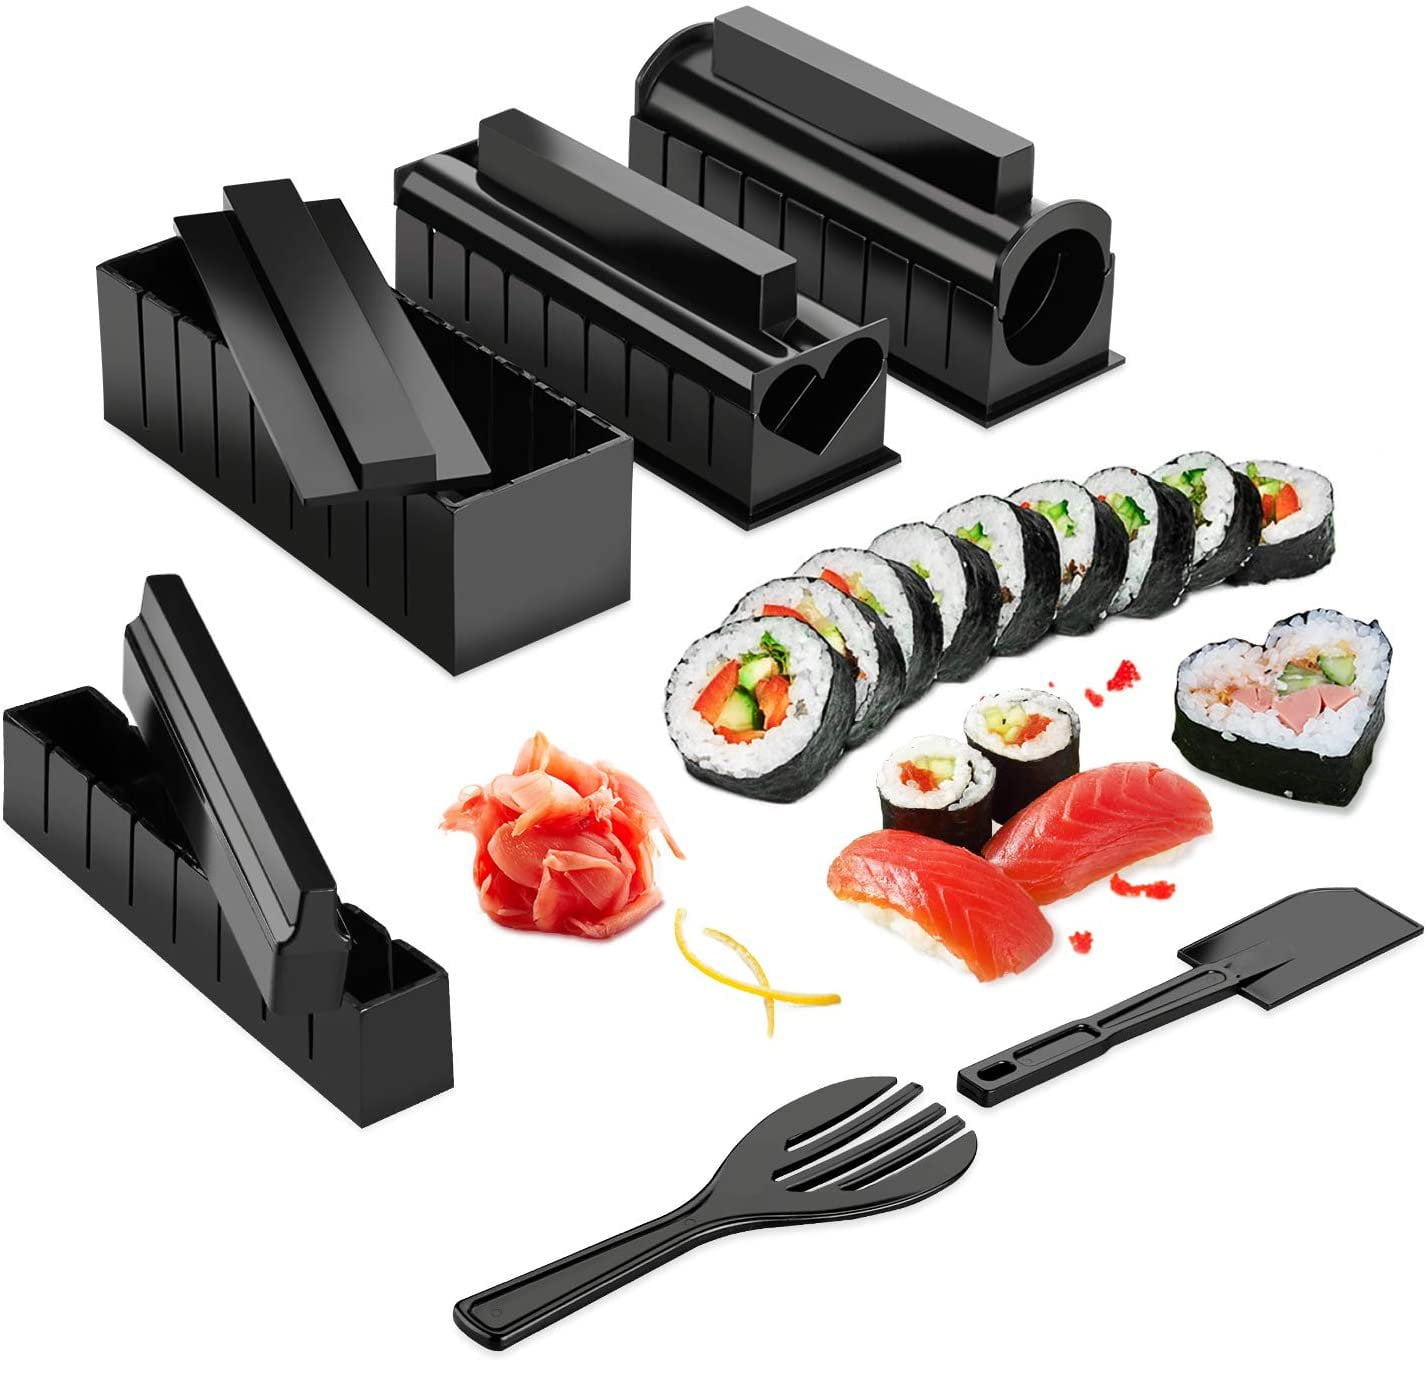 DIY sushi set tool to easily make various shapes of sushi